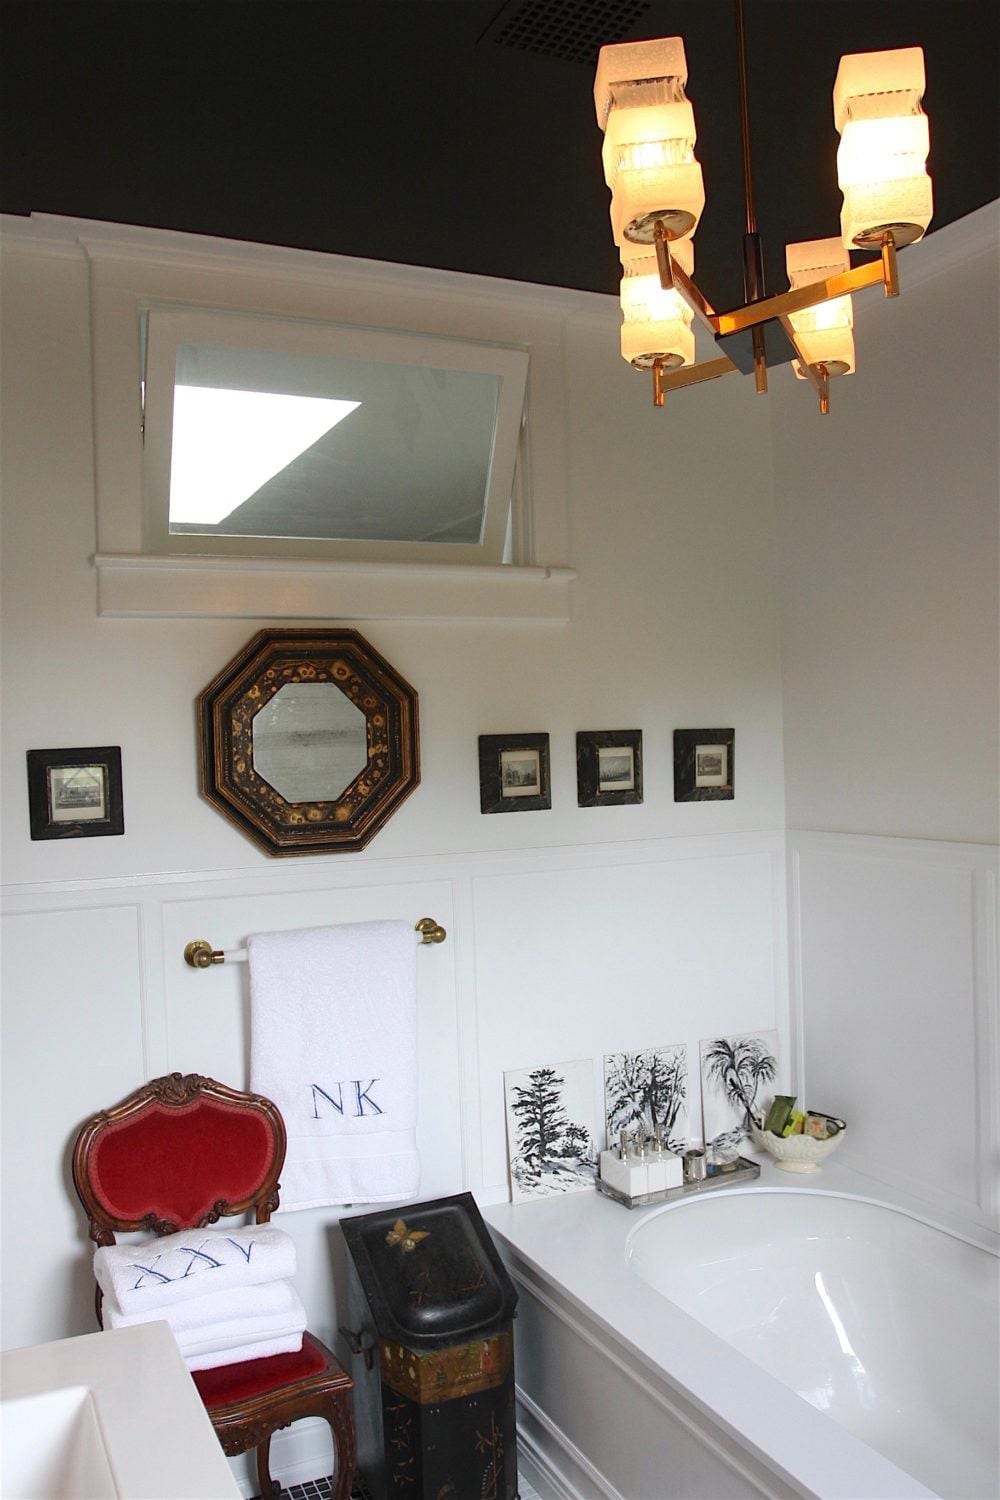 Nancy Keyes - bathroom after - wainscoting - brass chandelier - problem ceilings -Benjamin Moore Racoon Fur black ceiling